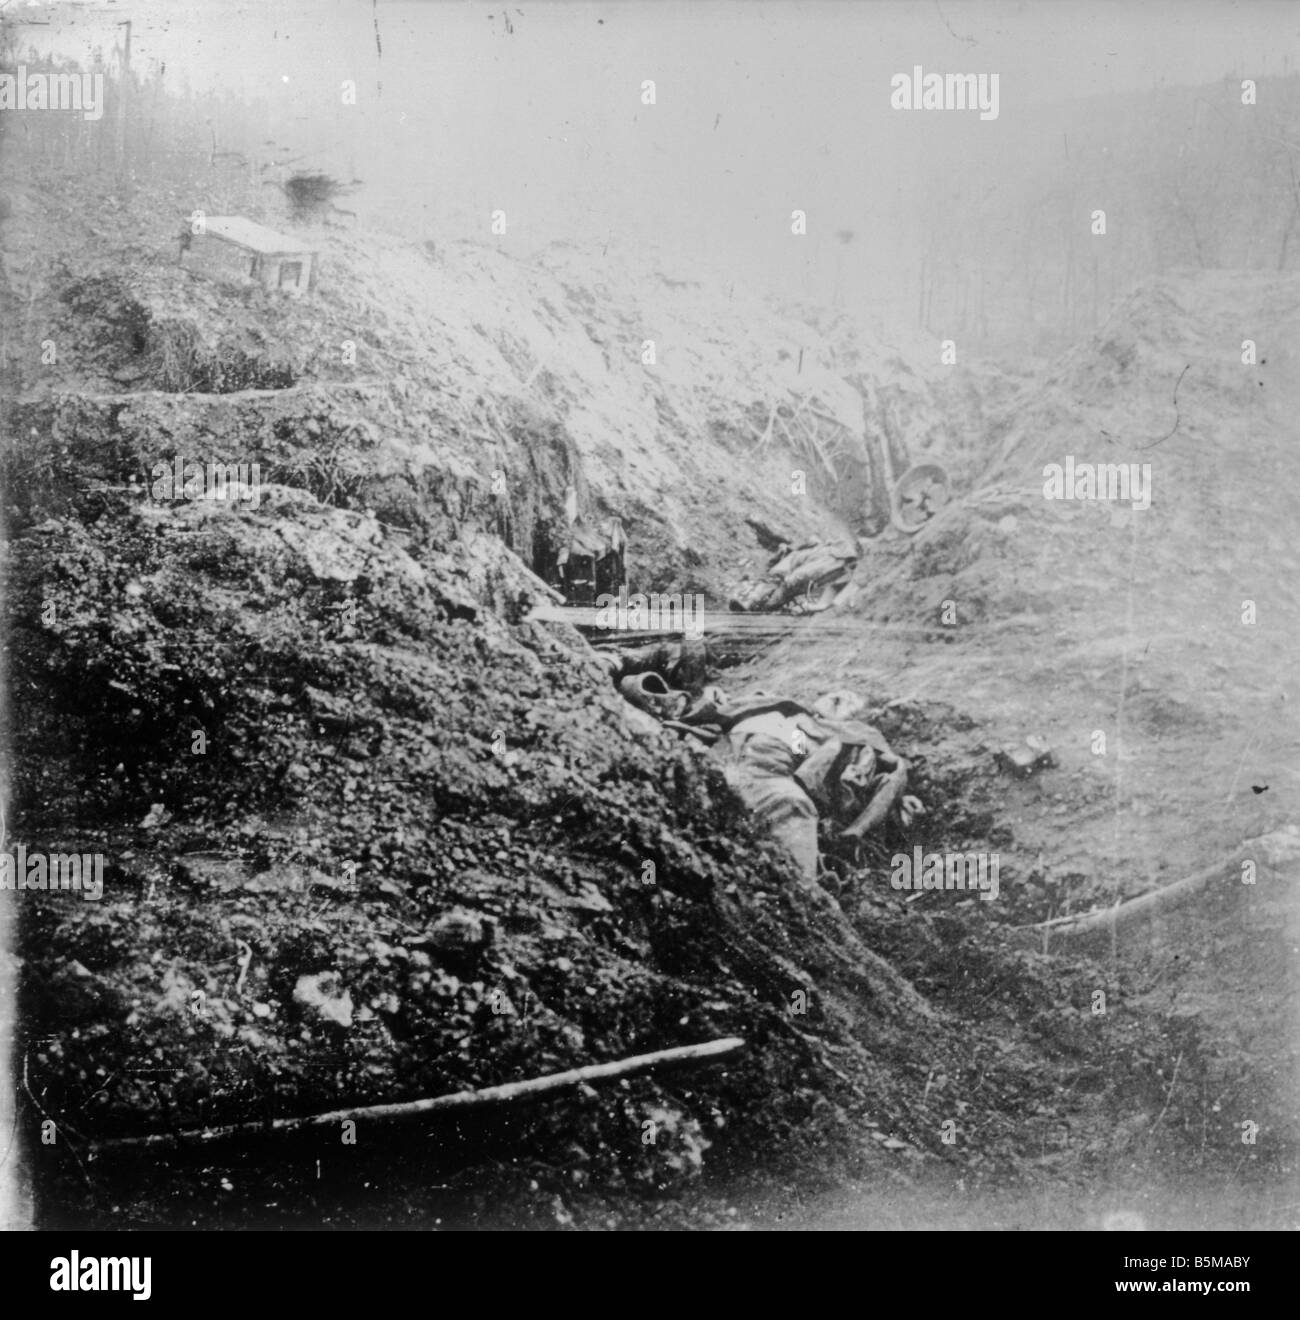 2 G55 W1 1916 26 deutsche Soldaten in Aktion Geschichte WWI Western Front Trench Warfare Körper getötet der deutschen Soldaten in getötet einem Stockfoto